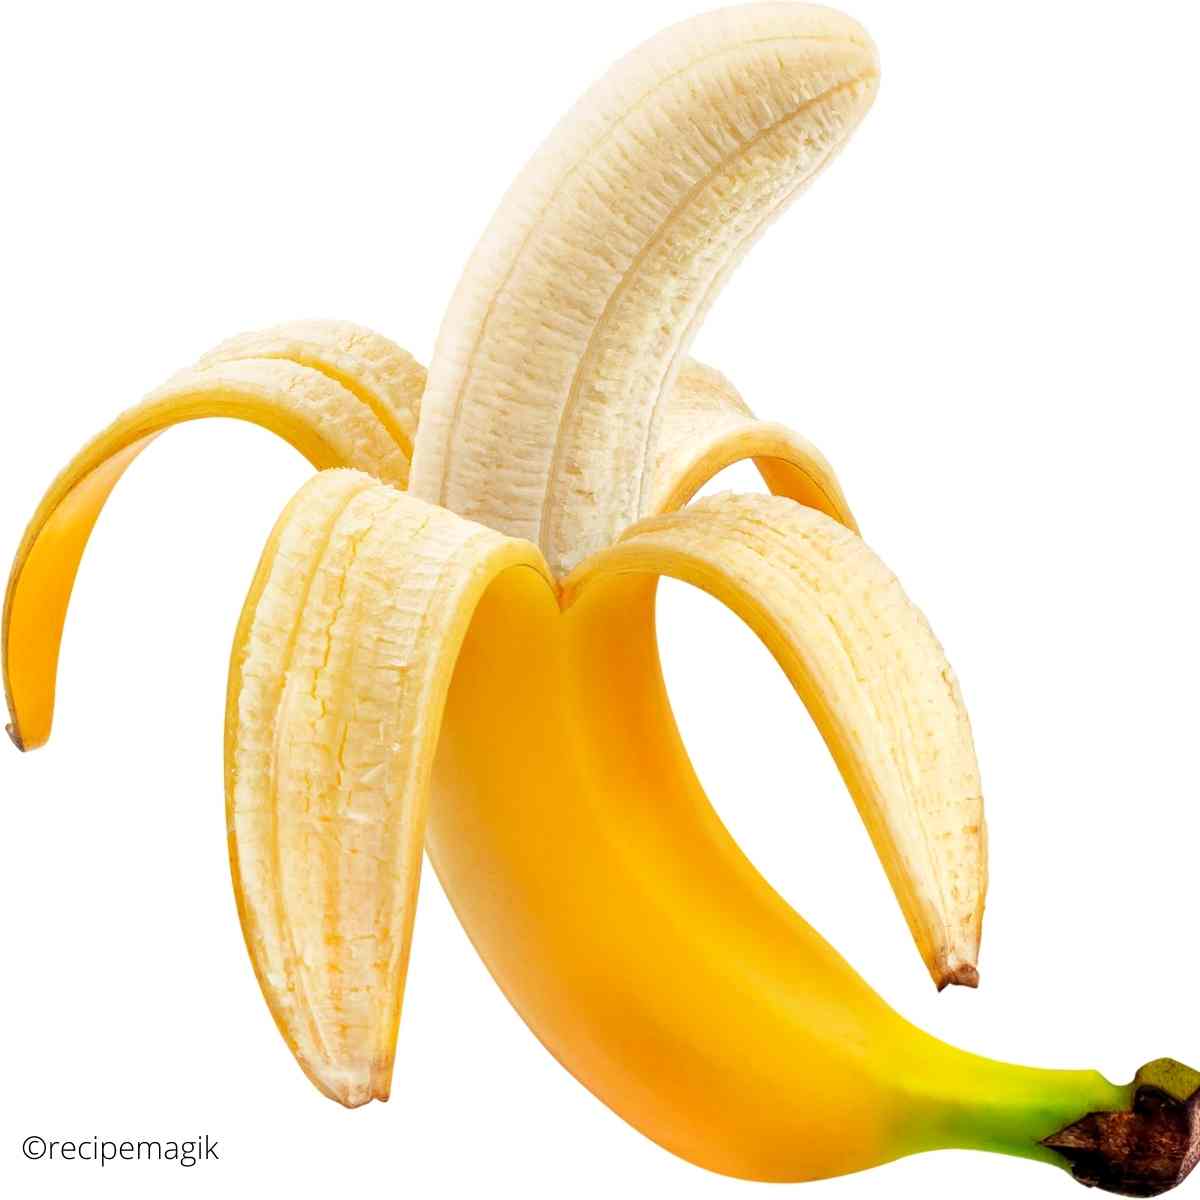 banana peeled open